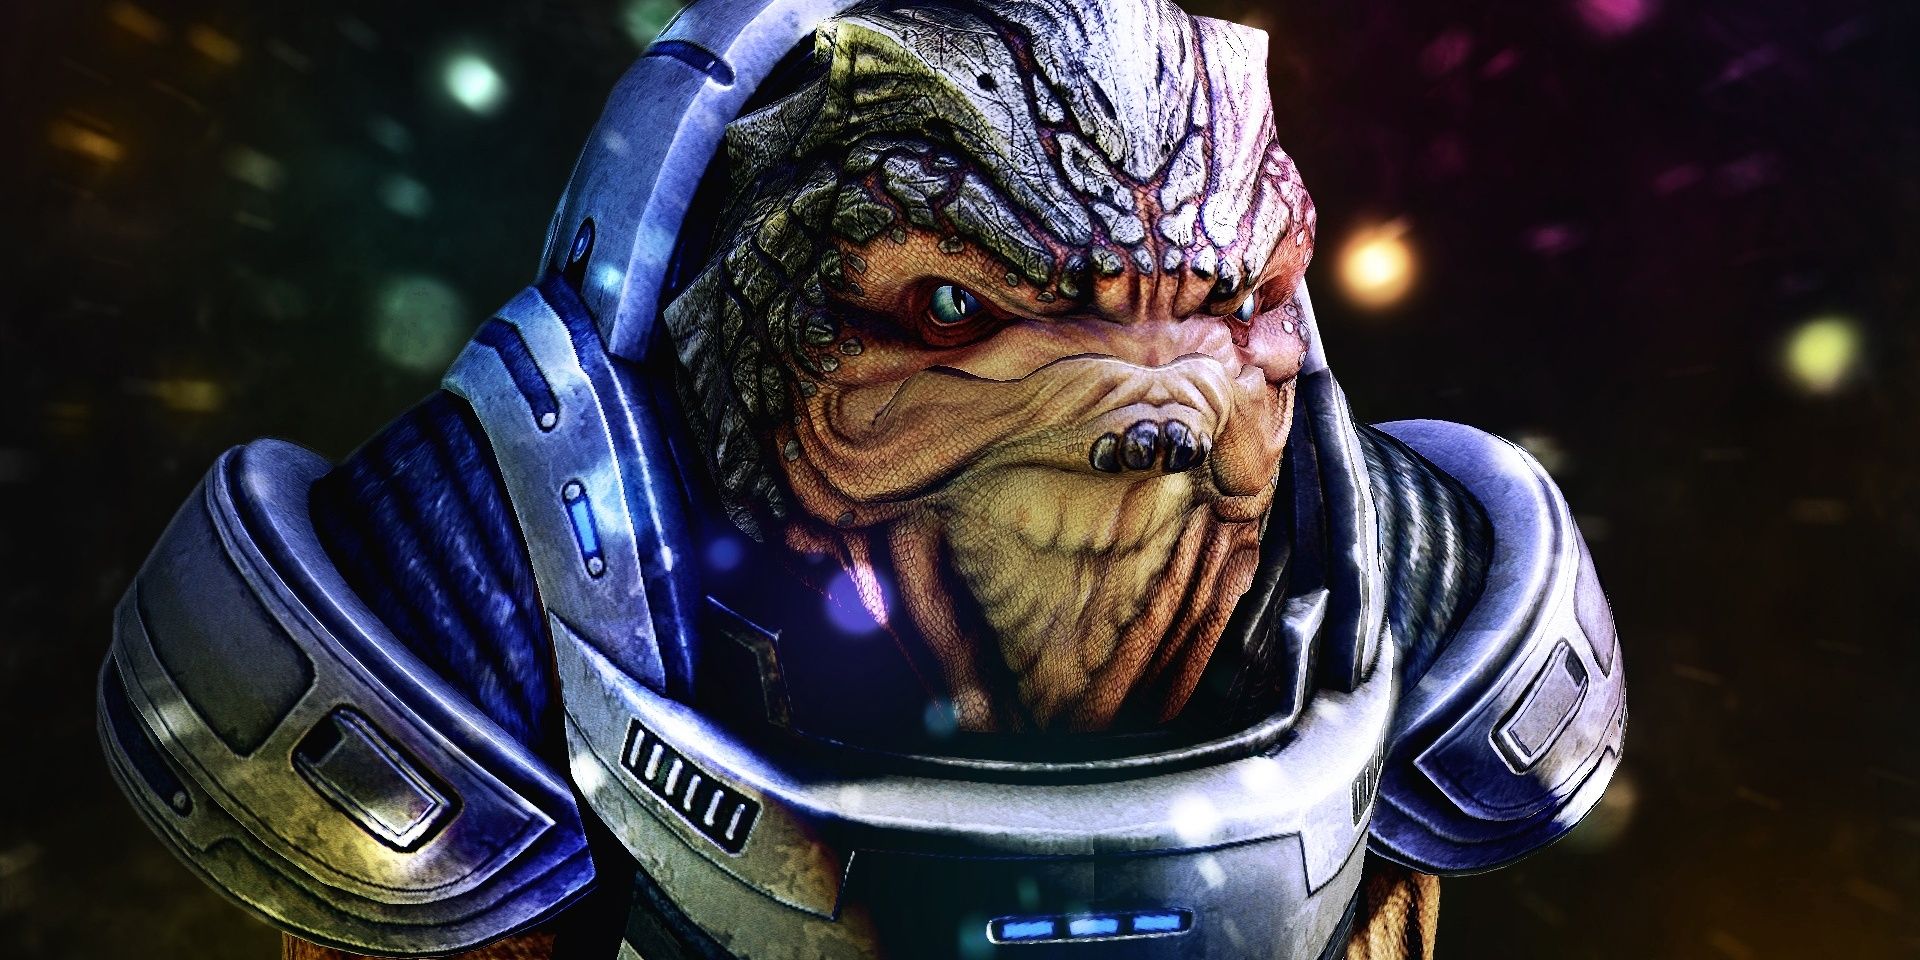 Grunt from Mass Effect 2